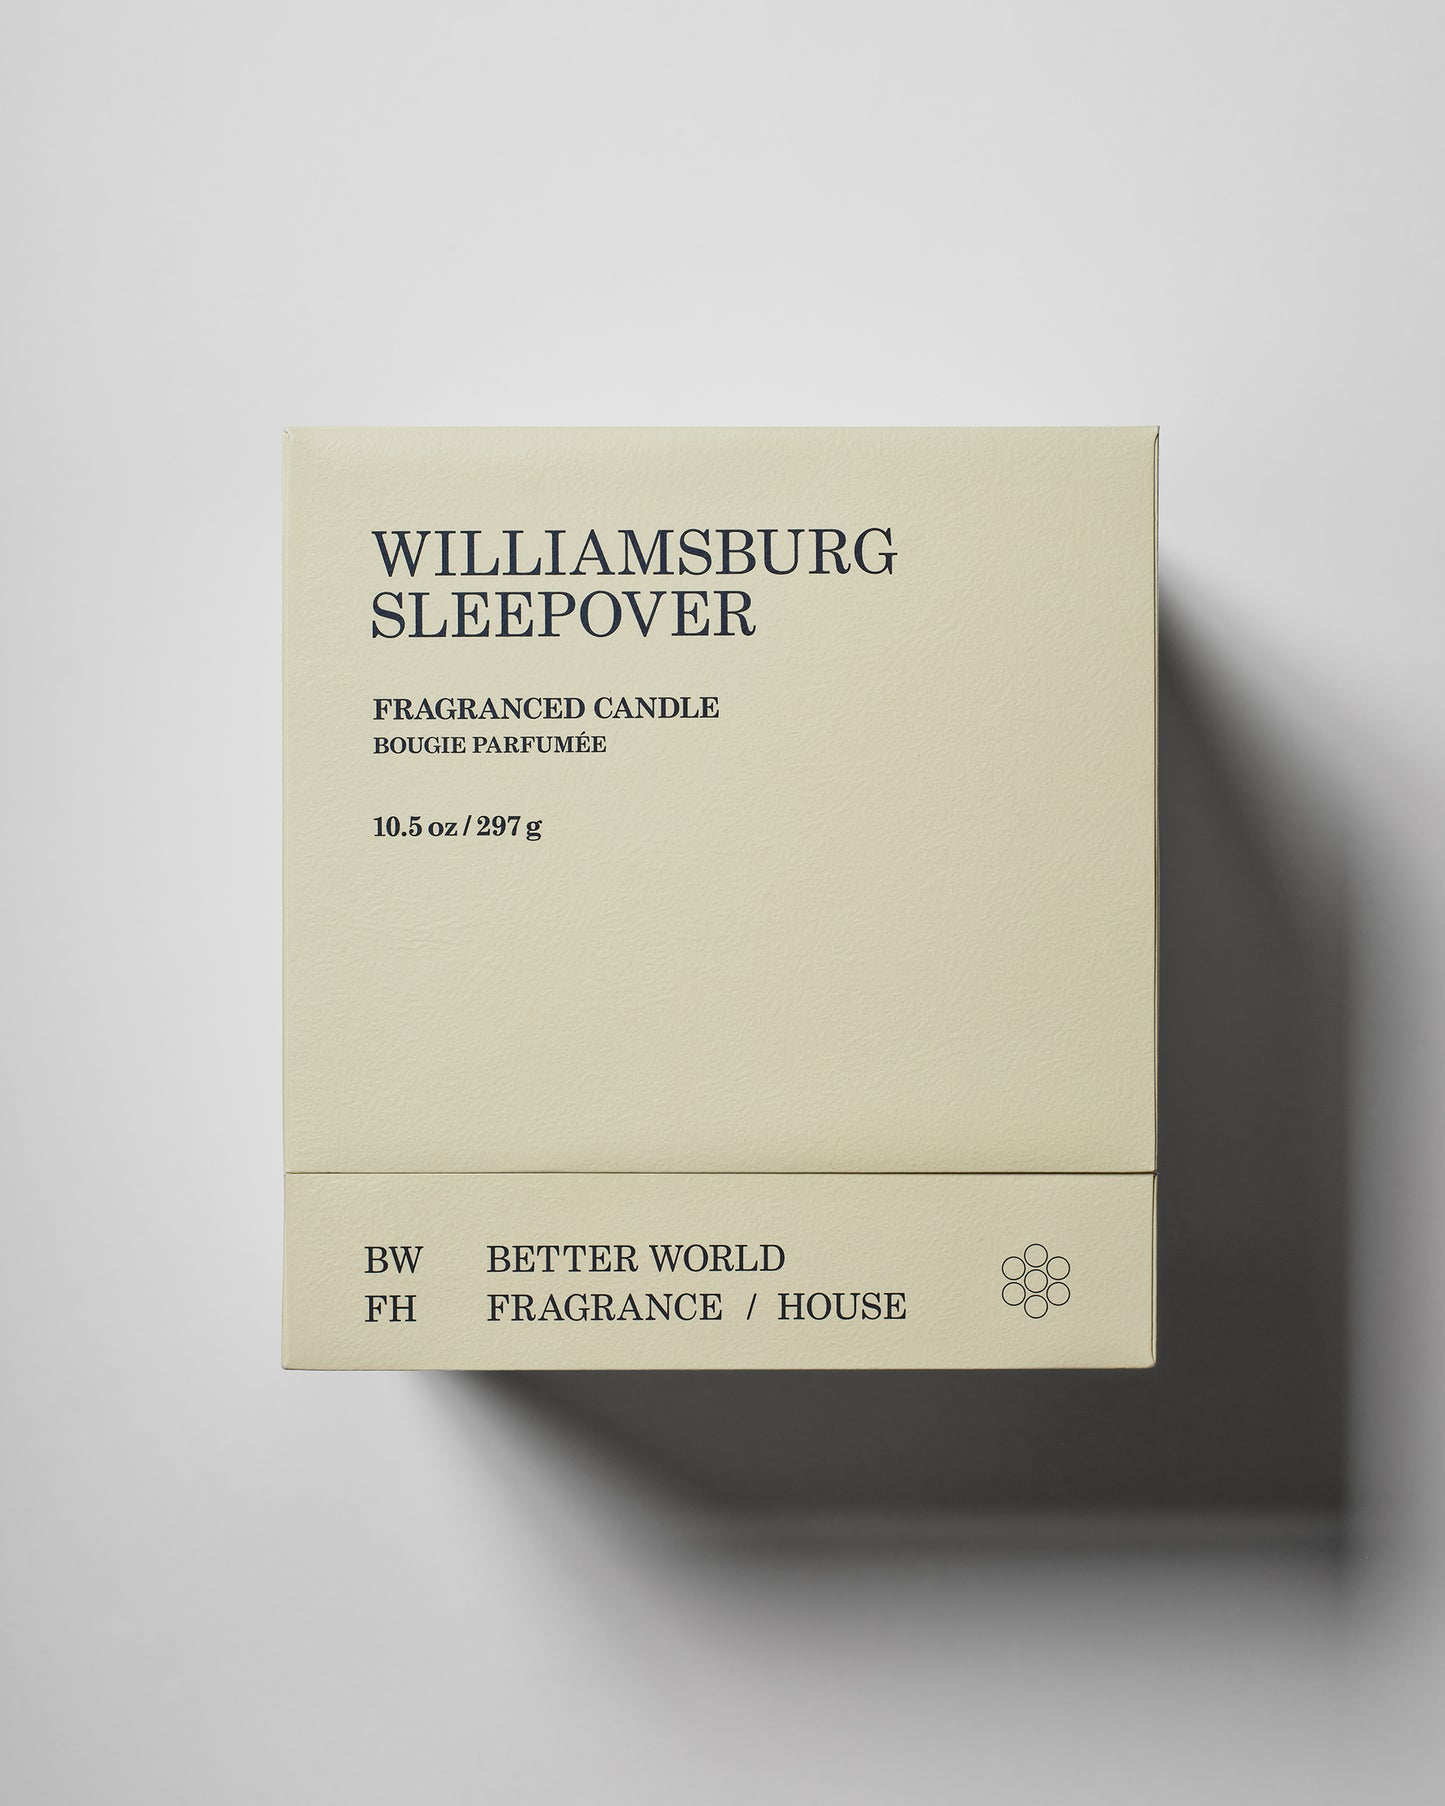 Williamsburg Sleepover